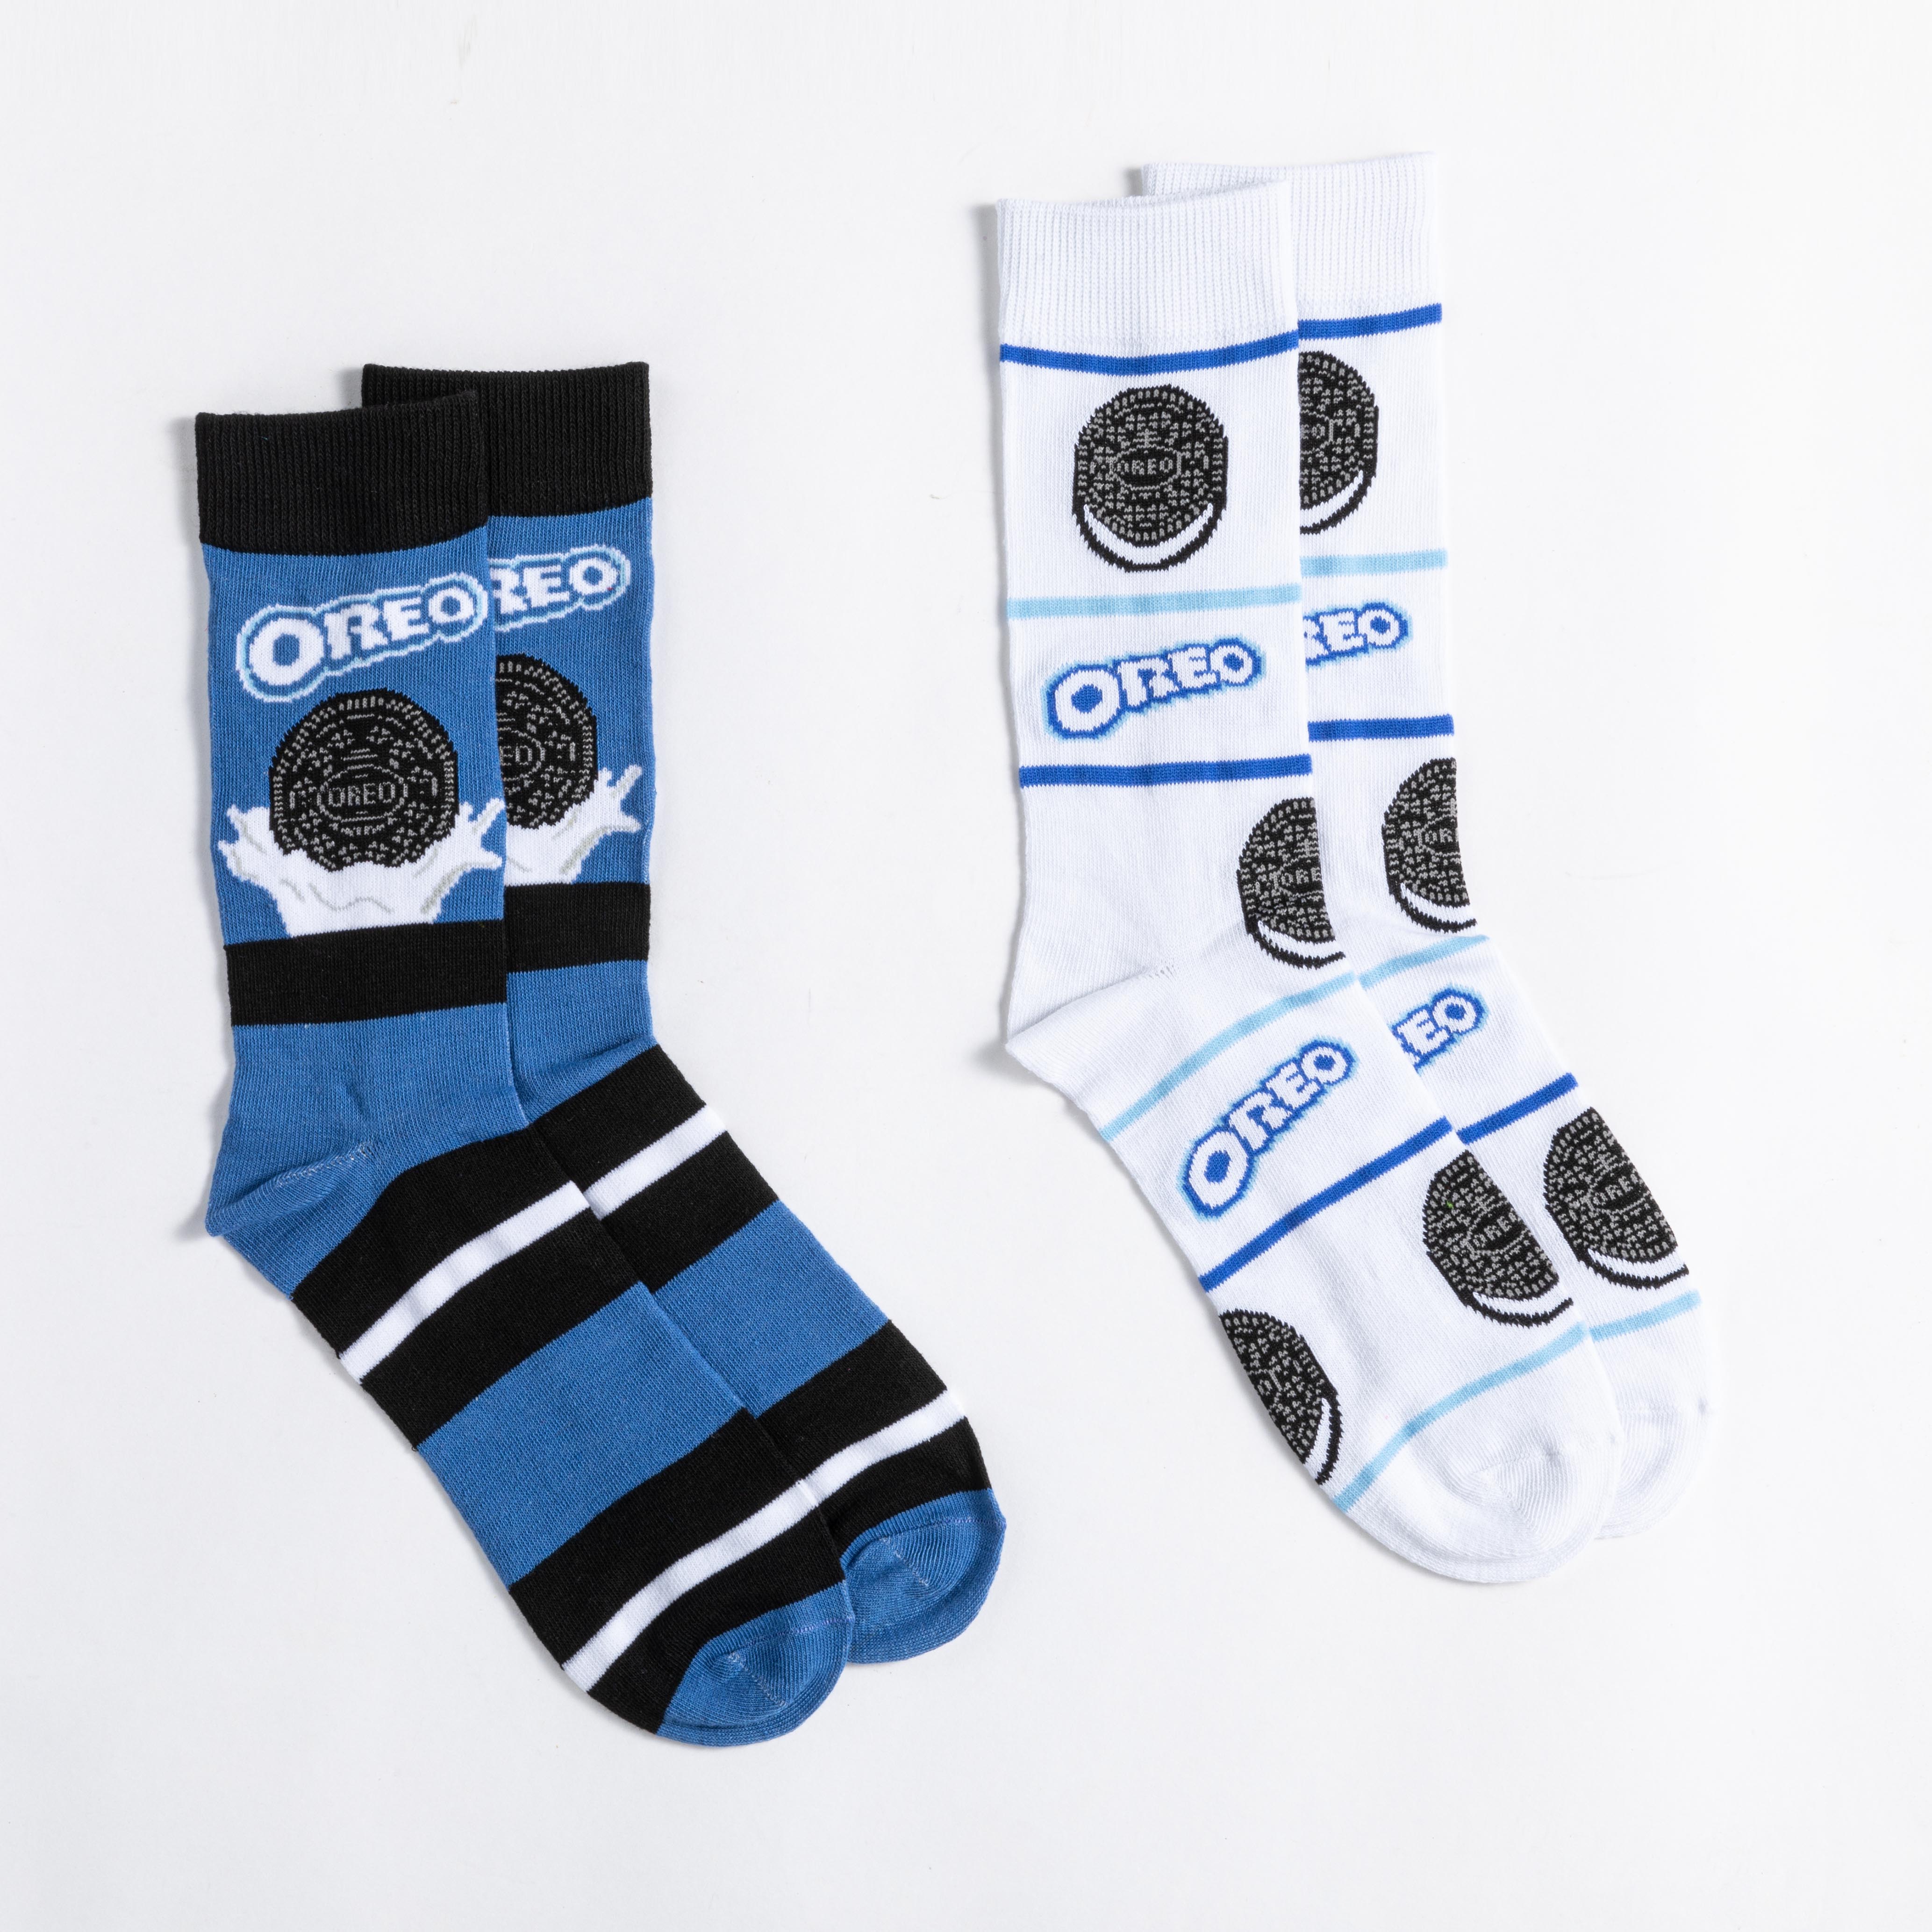 Socks Licensed - Oreos - Dollars and Sense